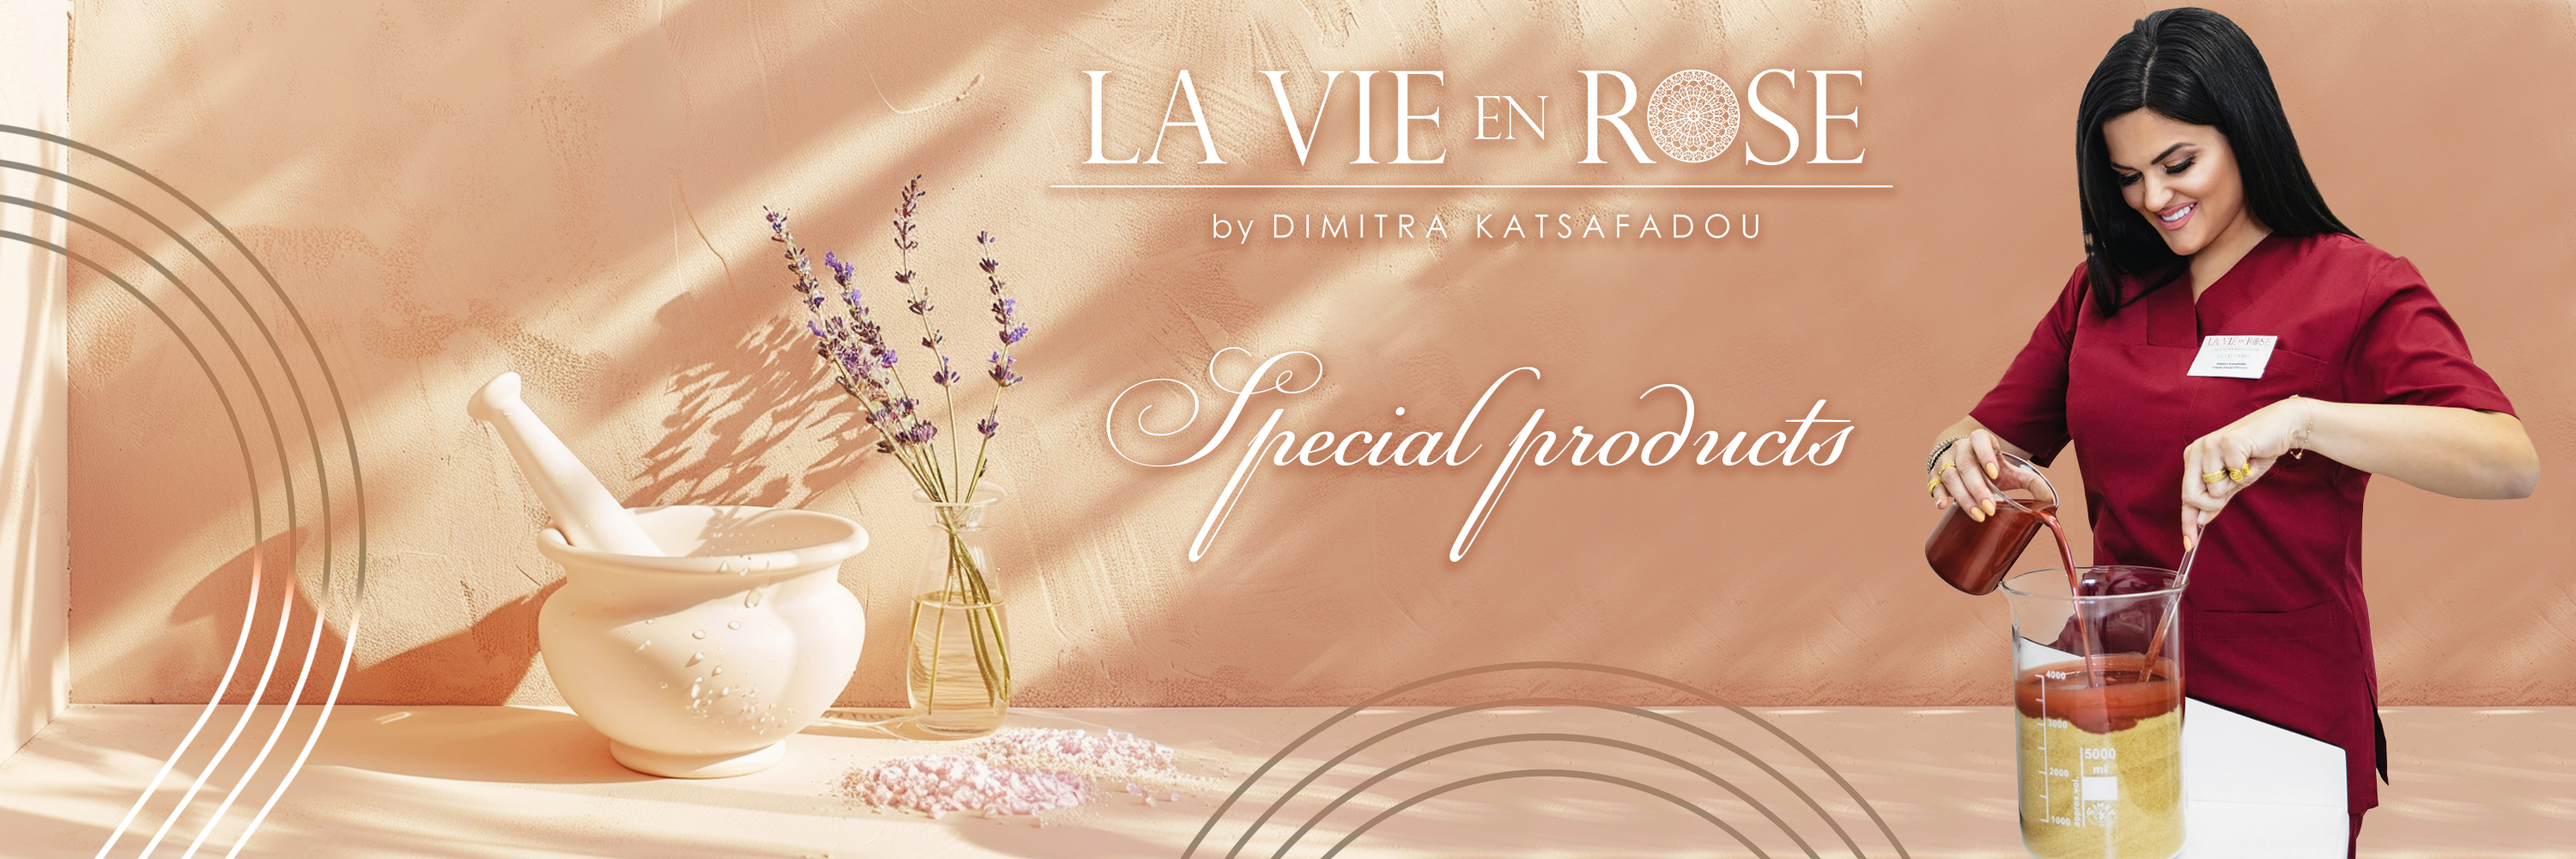 Special Products La Vie en Rose